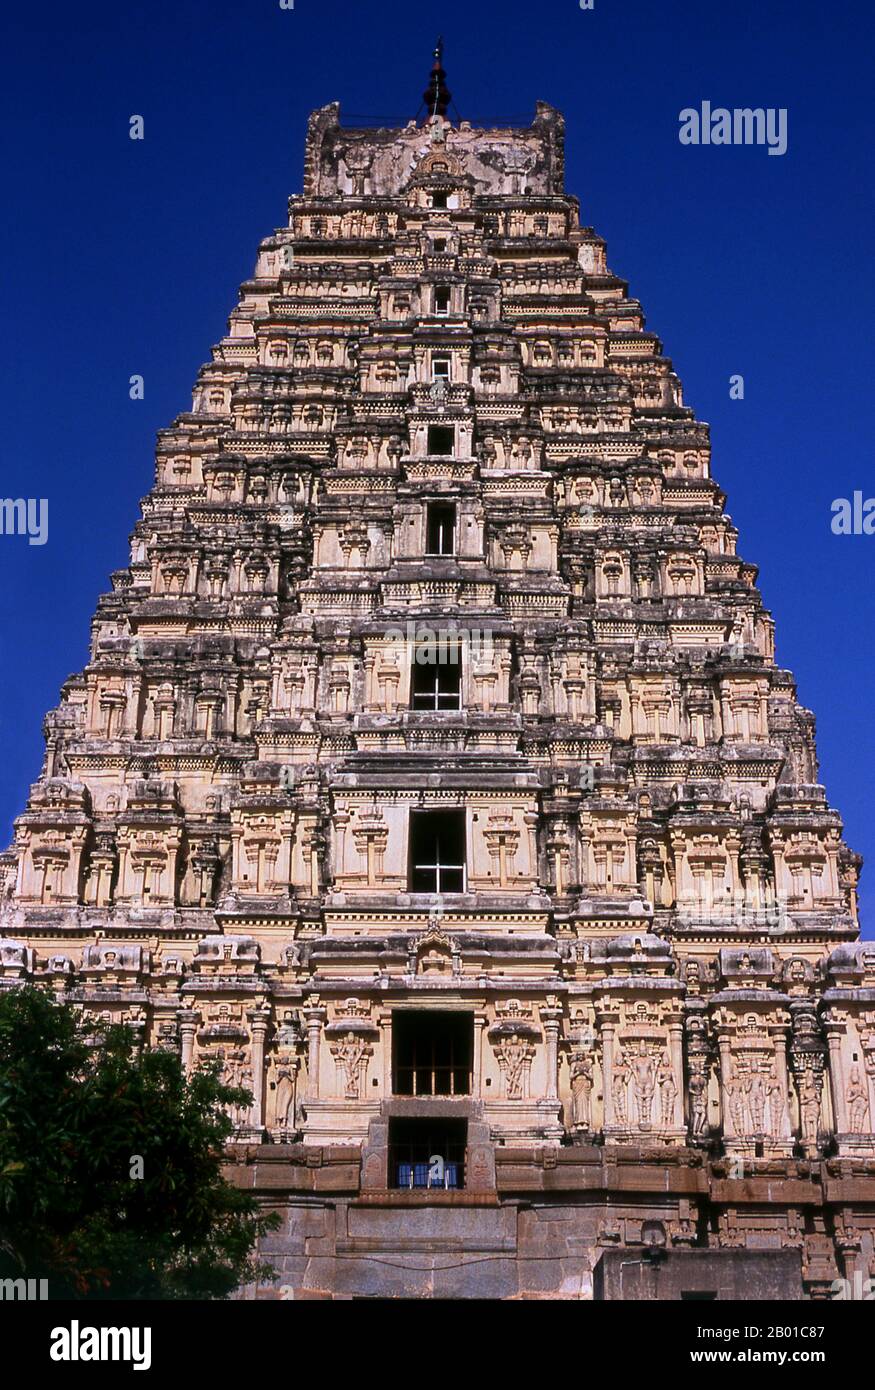 India: La torre orientale (gopuram) sorge sopra il tempio di Virupaksha, Hampi, stato di Karnataka. Il Tempio di Virupaksha (conosciuto anche come Tempio di Pampapathi) è il principale centro di pellegrinaggio di Hampi. E' completamente intatto tra le rovine circostanti ed è ancora utilizzato nel culto. Il tempio è dedicato al Signore Shiva, qui conosciuto come Virupaksha, come la consorte della dea locale Pampa, associata al fiume Tungabhadra. Hampi è un villaggio nel nord dello stato di Karnataka. Si trova all'interno delle rovine di Vijayanagara, l'ex capitale dell'Impero Vijayanagara. Foto Stock